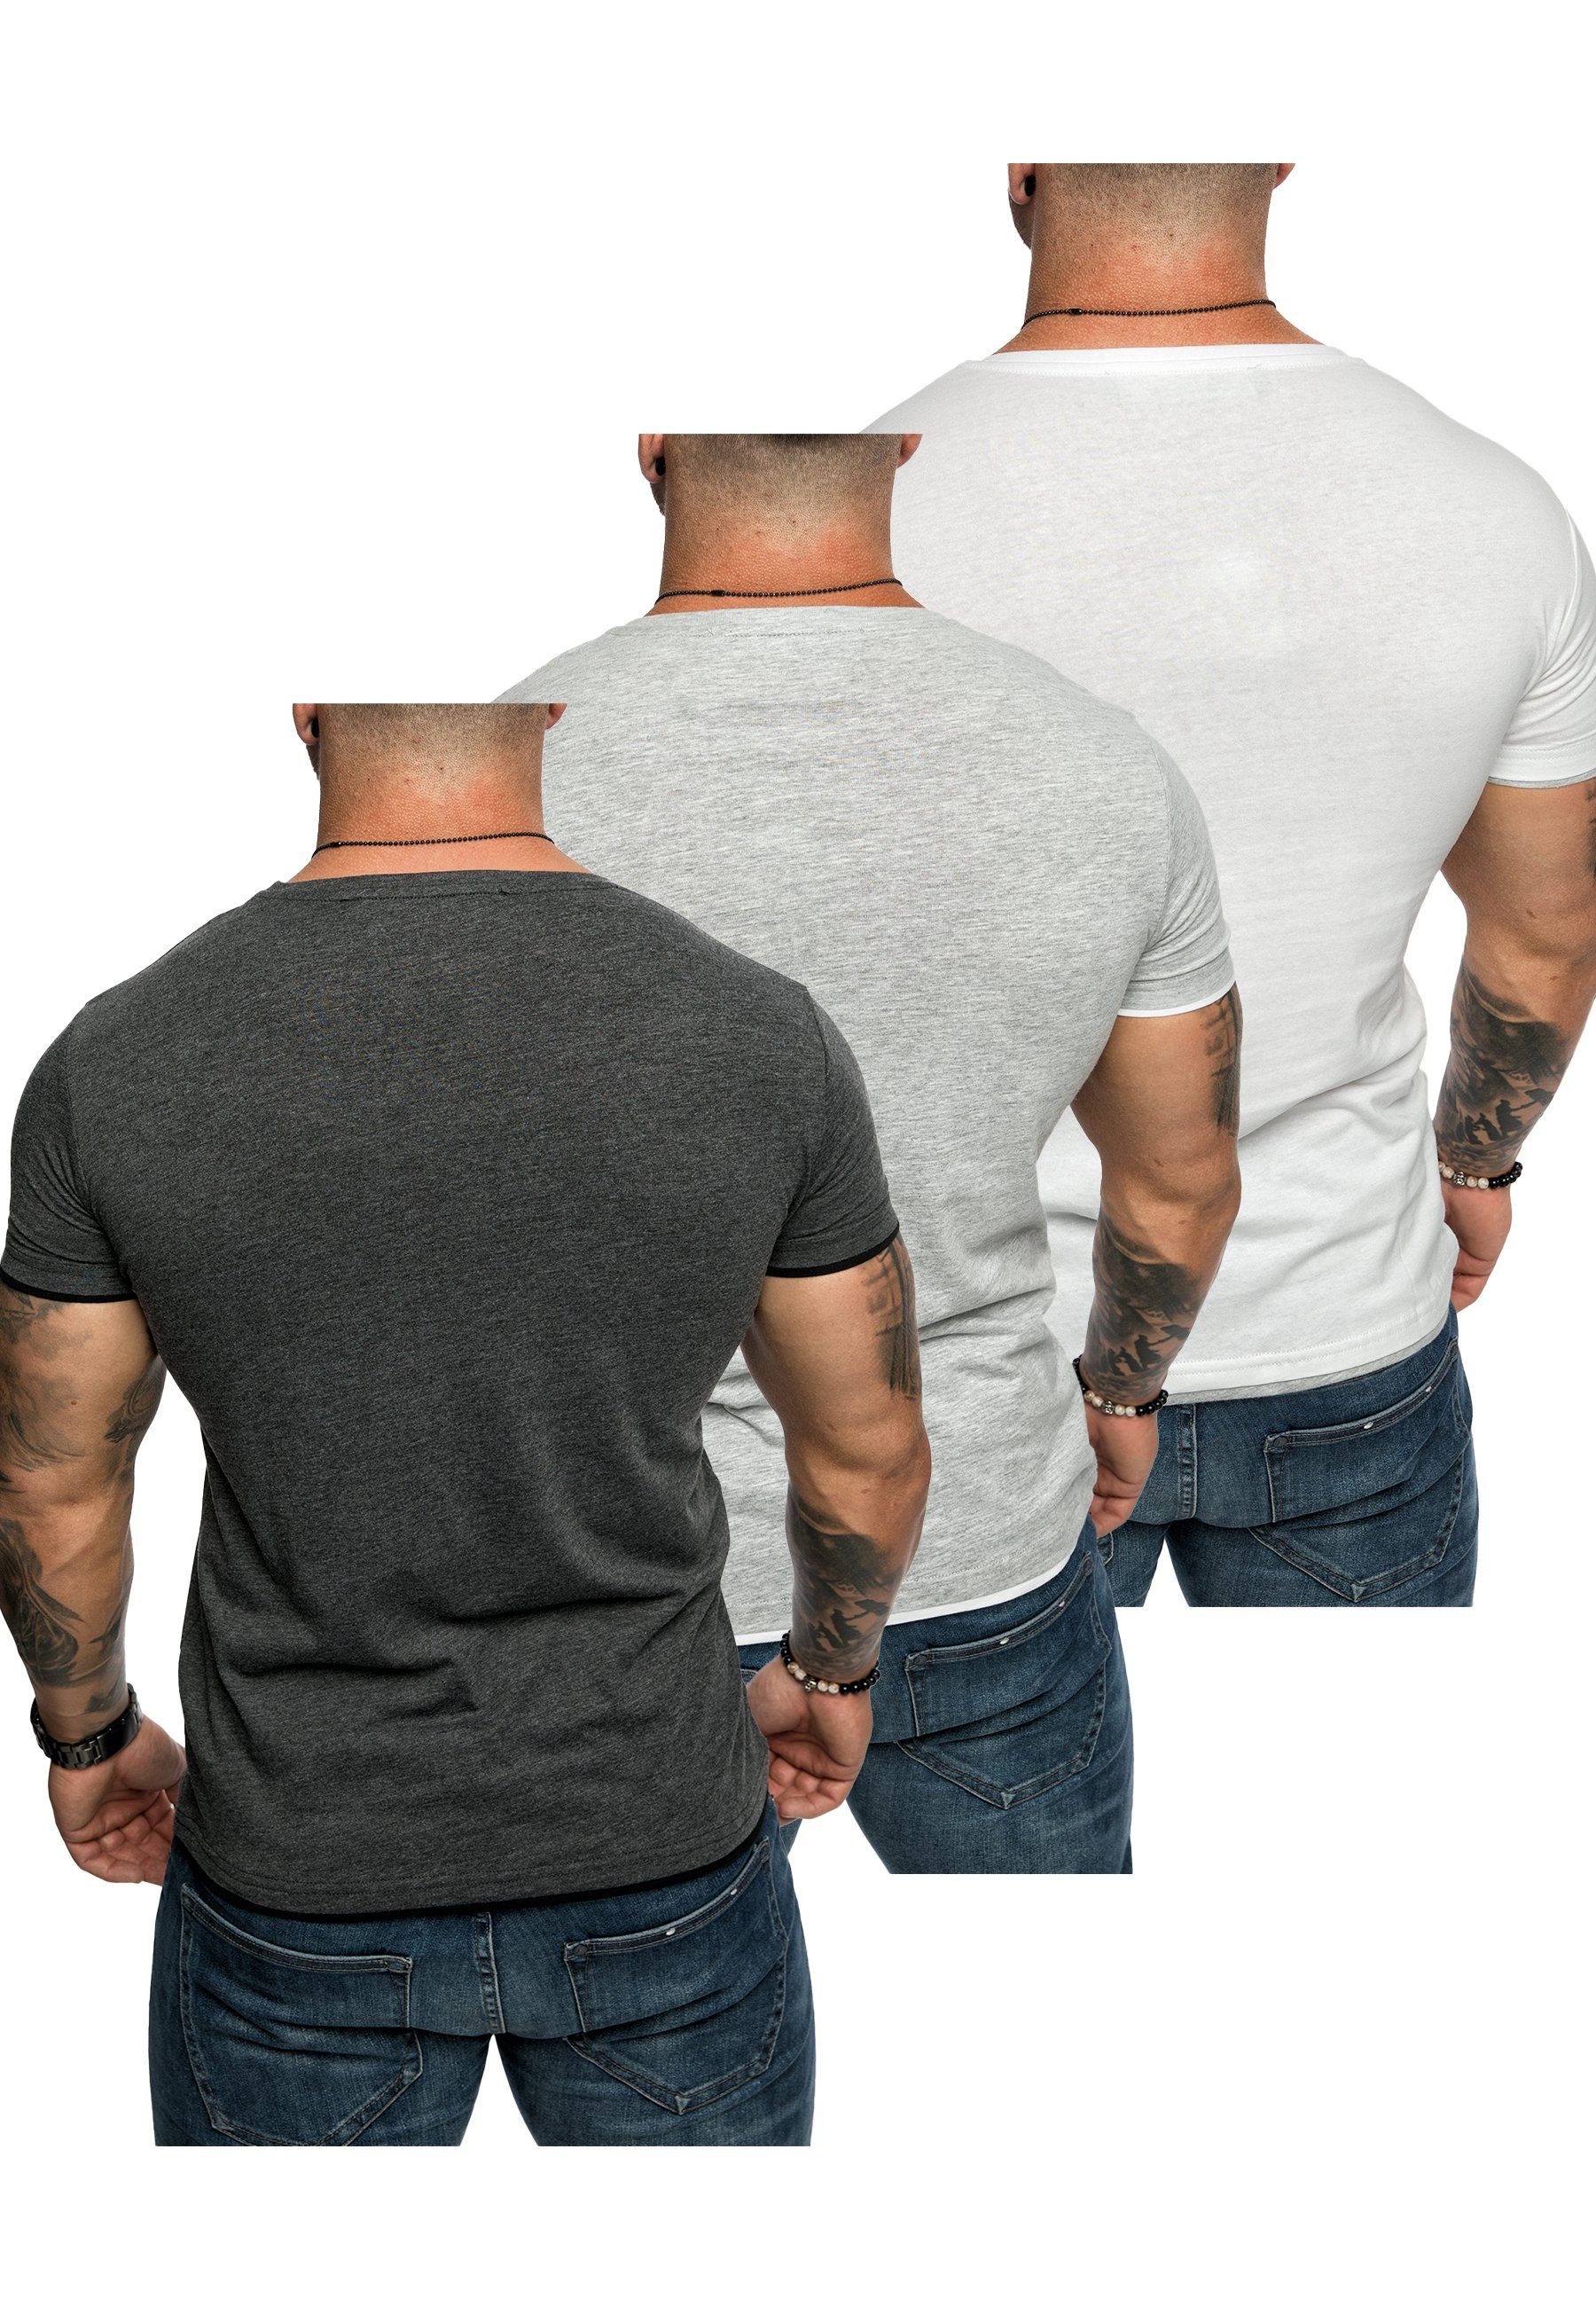 + Rundhalsausschnitt Grau/Weiß) Oversize LAKEWOOD mit Amaci&Sons Basic 3. T-Shirt 3er-Pack T-Shirt + (Weiß/Grau (3er-Pack) T-Shirts Anthrazit/Schwarz Herren